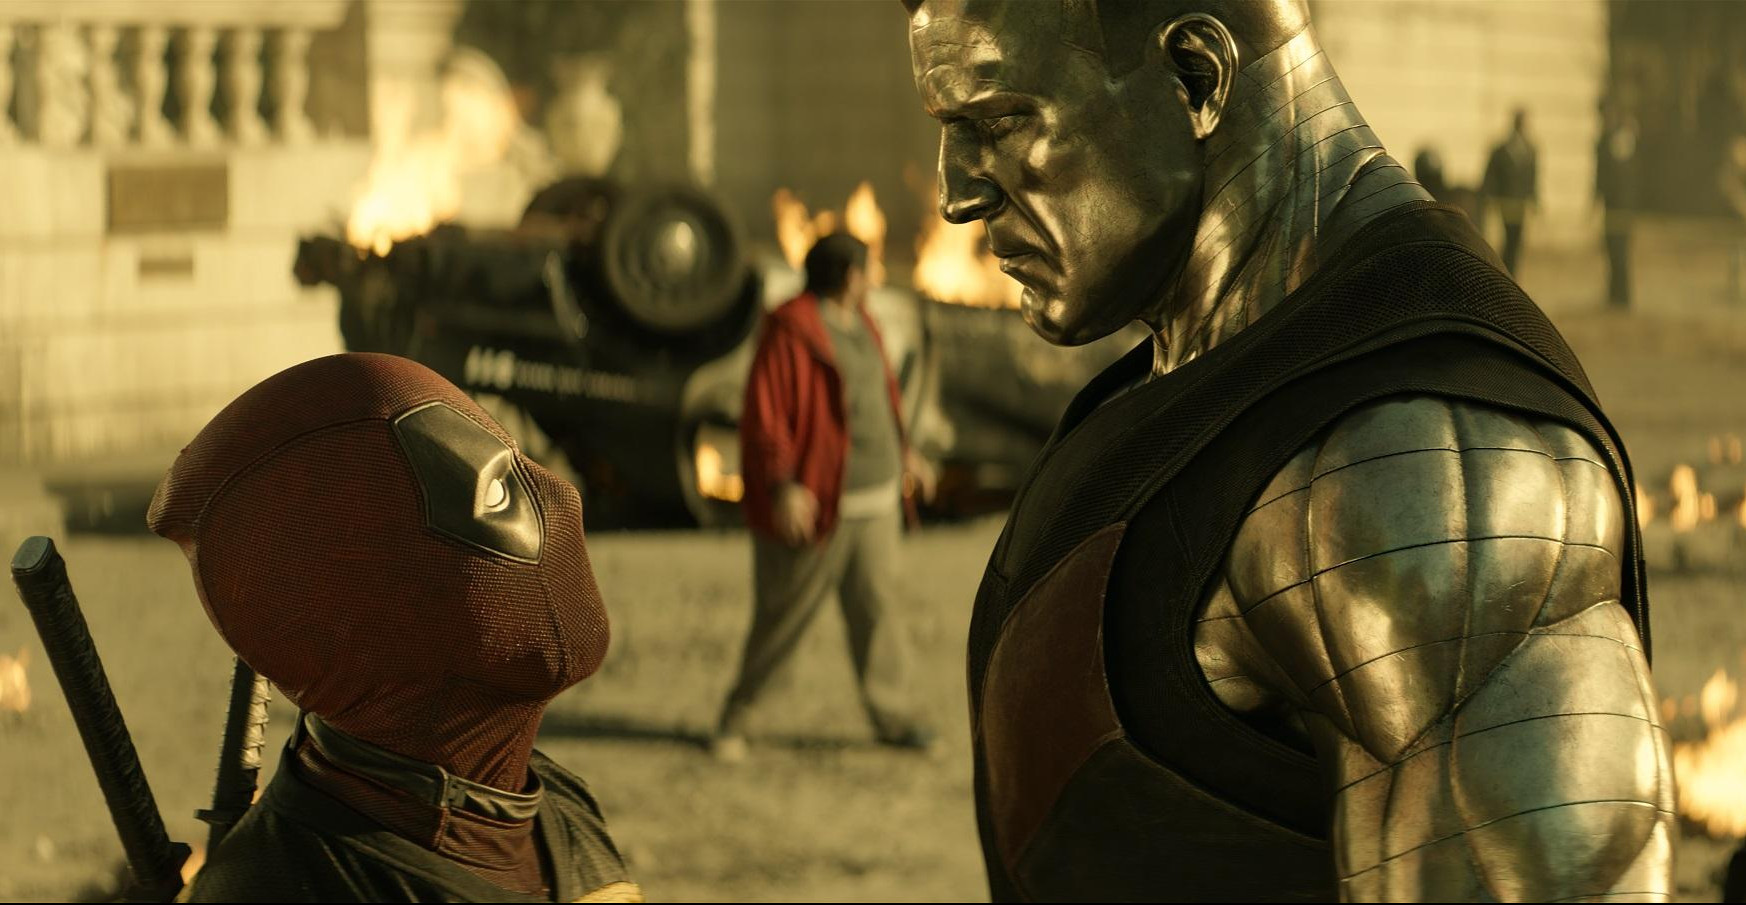 (FOTO) STEFAN KAPIČIĆ sutra na specijalnoj projekciji filma "Deadpool 2" u Kombank dvorani